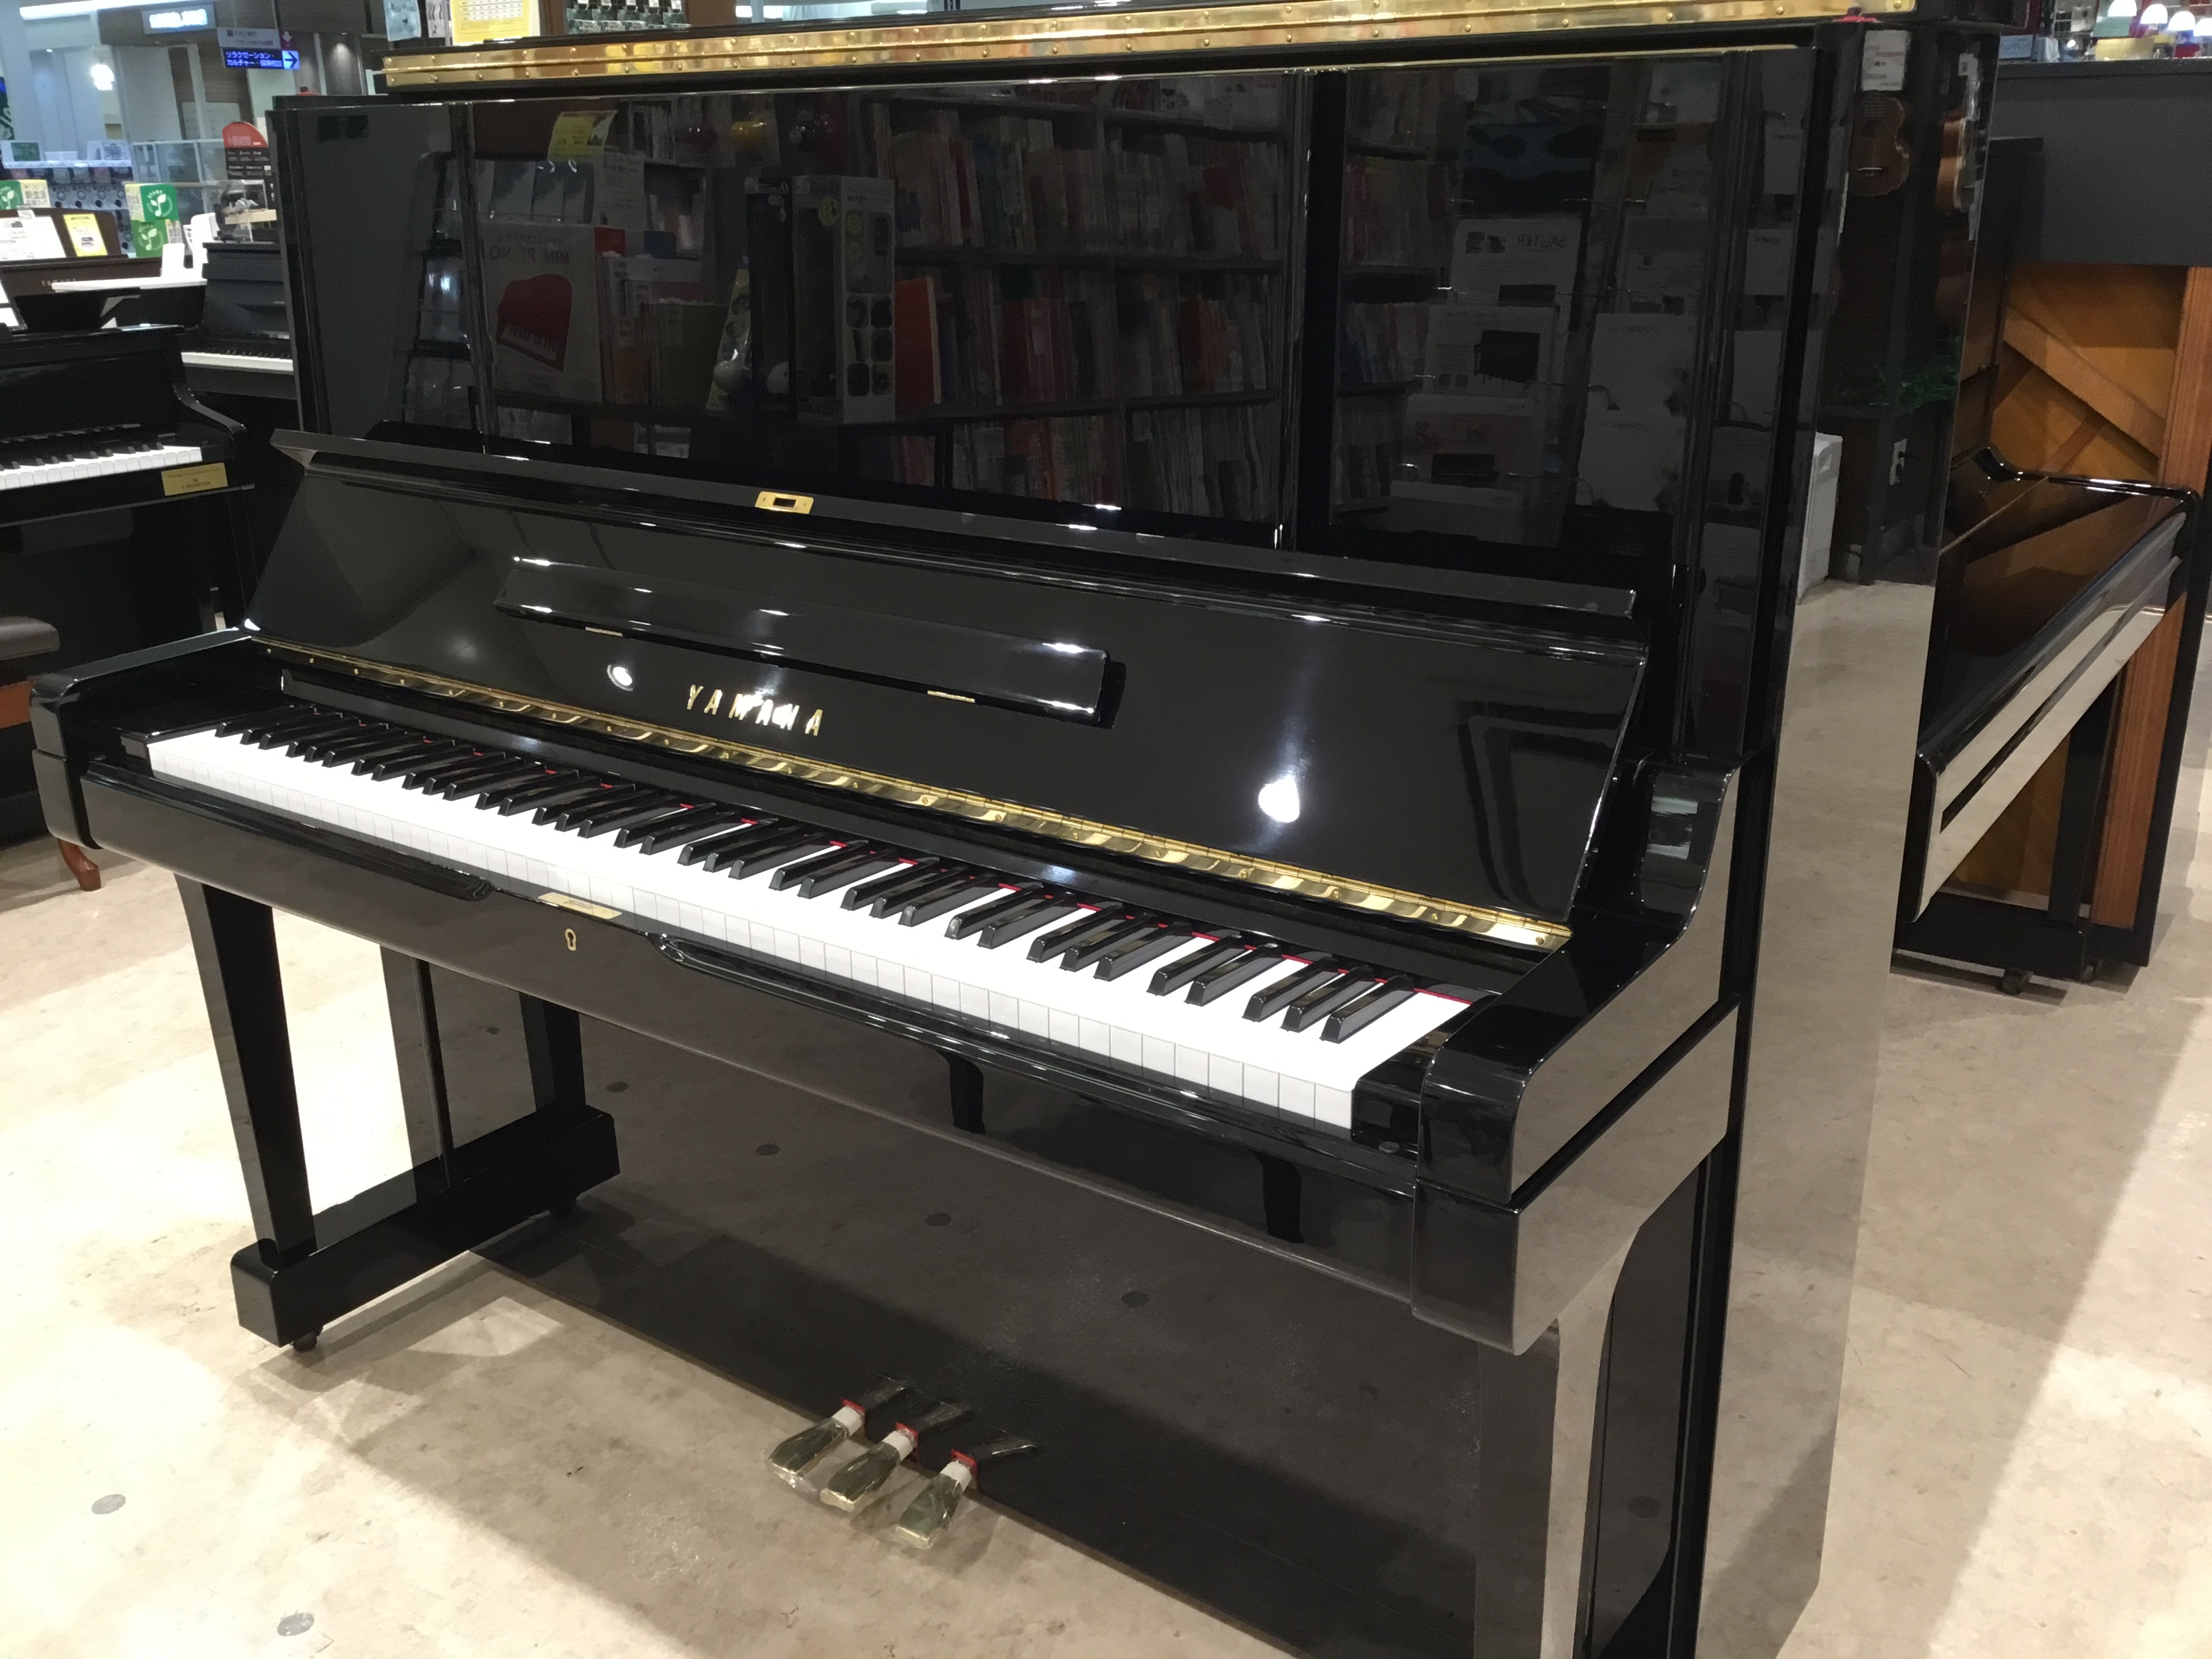 CONTENTS中古アップライトピアノ　YAMAHA(ヤマハ)　UX3ご成約特典のご案内グランドピアノ・アップライトピアノ・電子ピアノ含めて最適な選択のお手伝いを致します。アップライトピアノ配送料金表中古アップライトピアノ　YAMAHA(ヤマハ)　UX3 中古ピアノ市場ではかなり人気の高い　YAMA […]